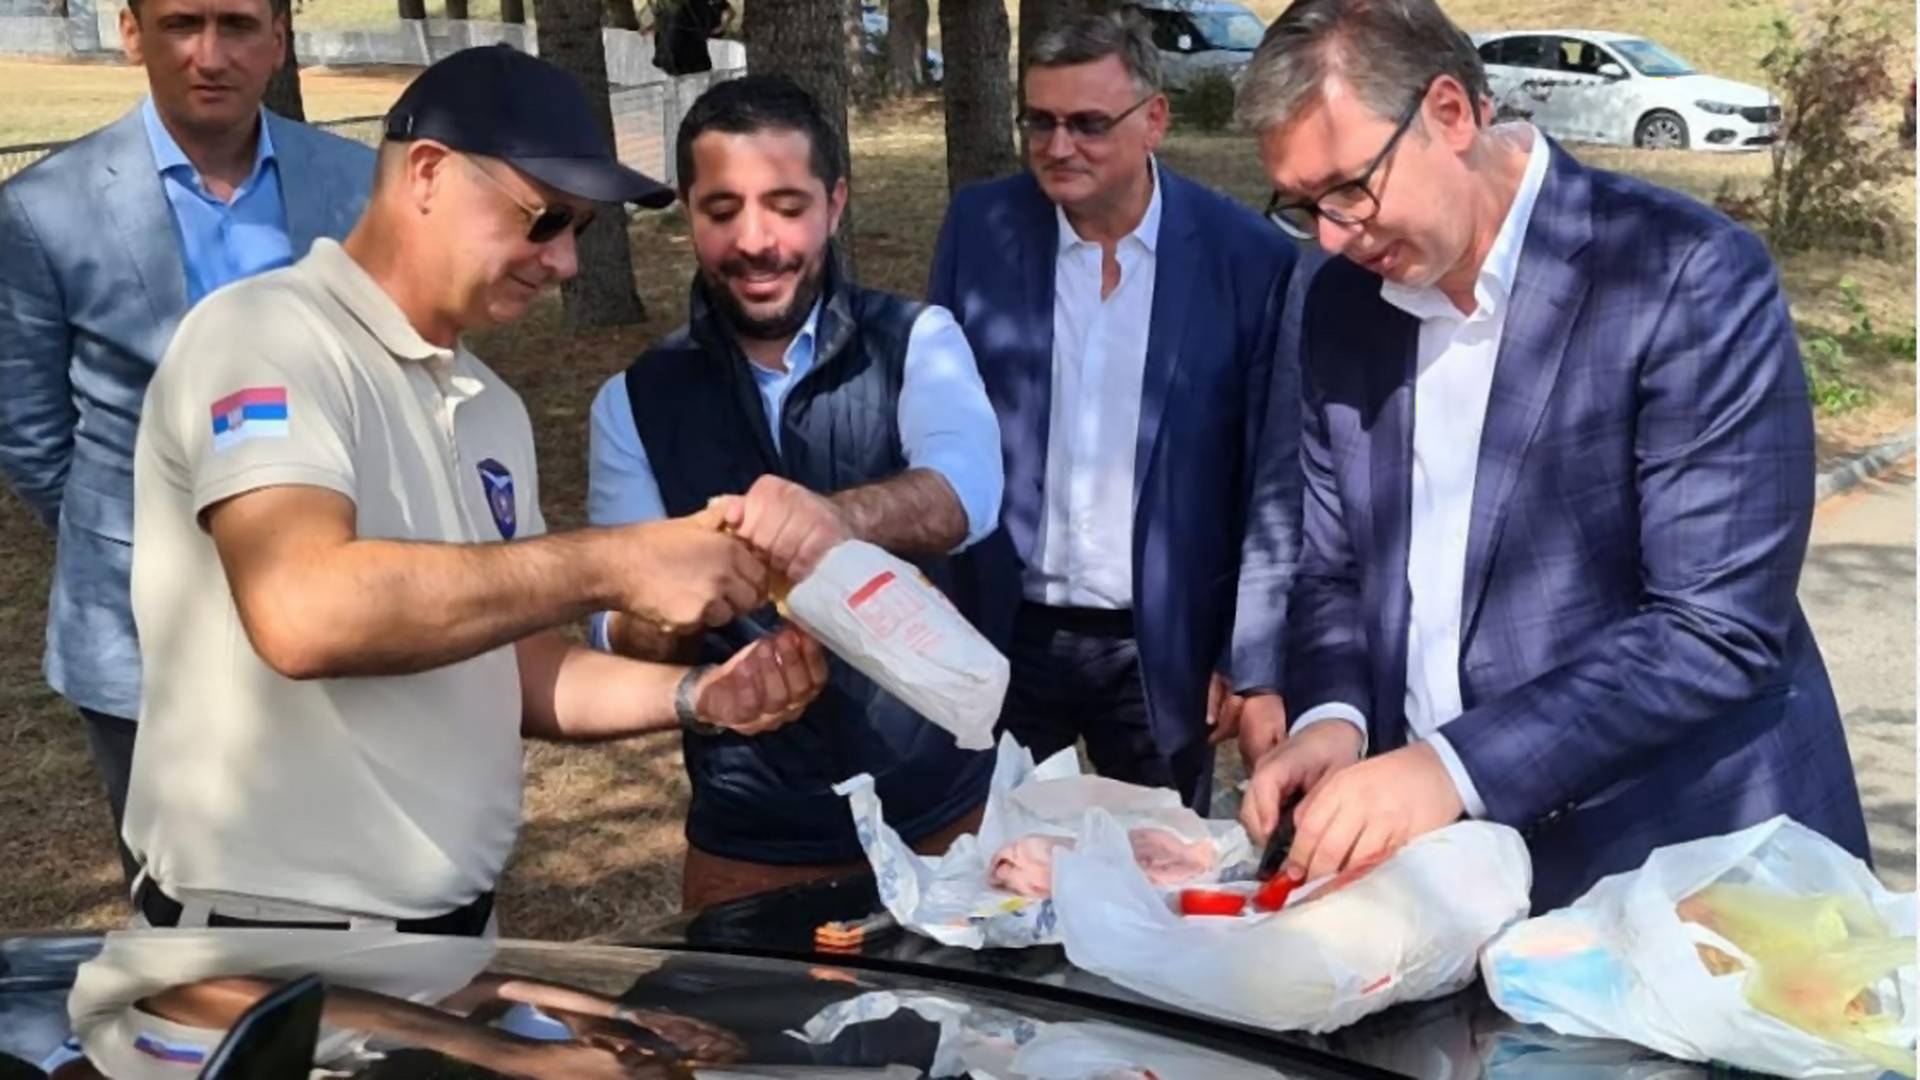 Aleksandar Vučić me podsetio zašto nikad neću razumeti ljude koji jedu sa haube